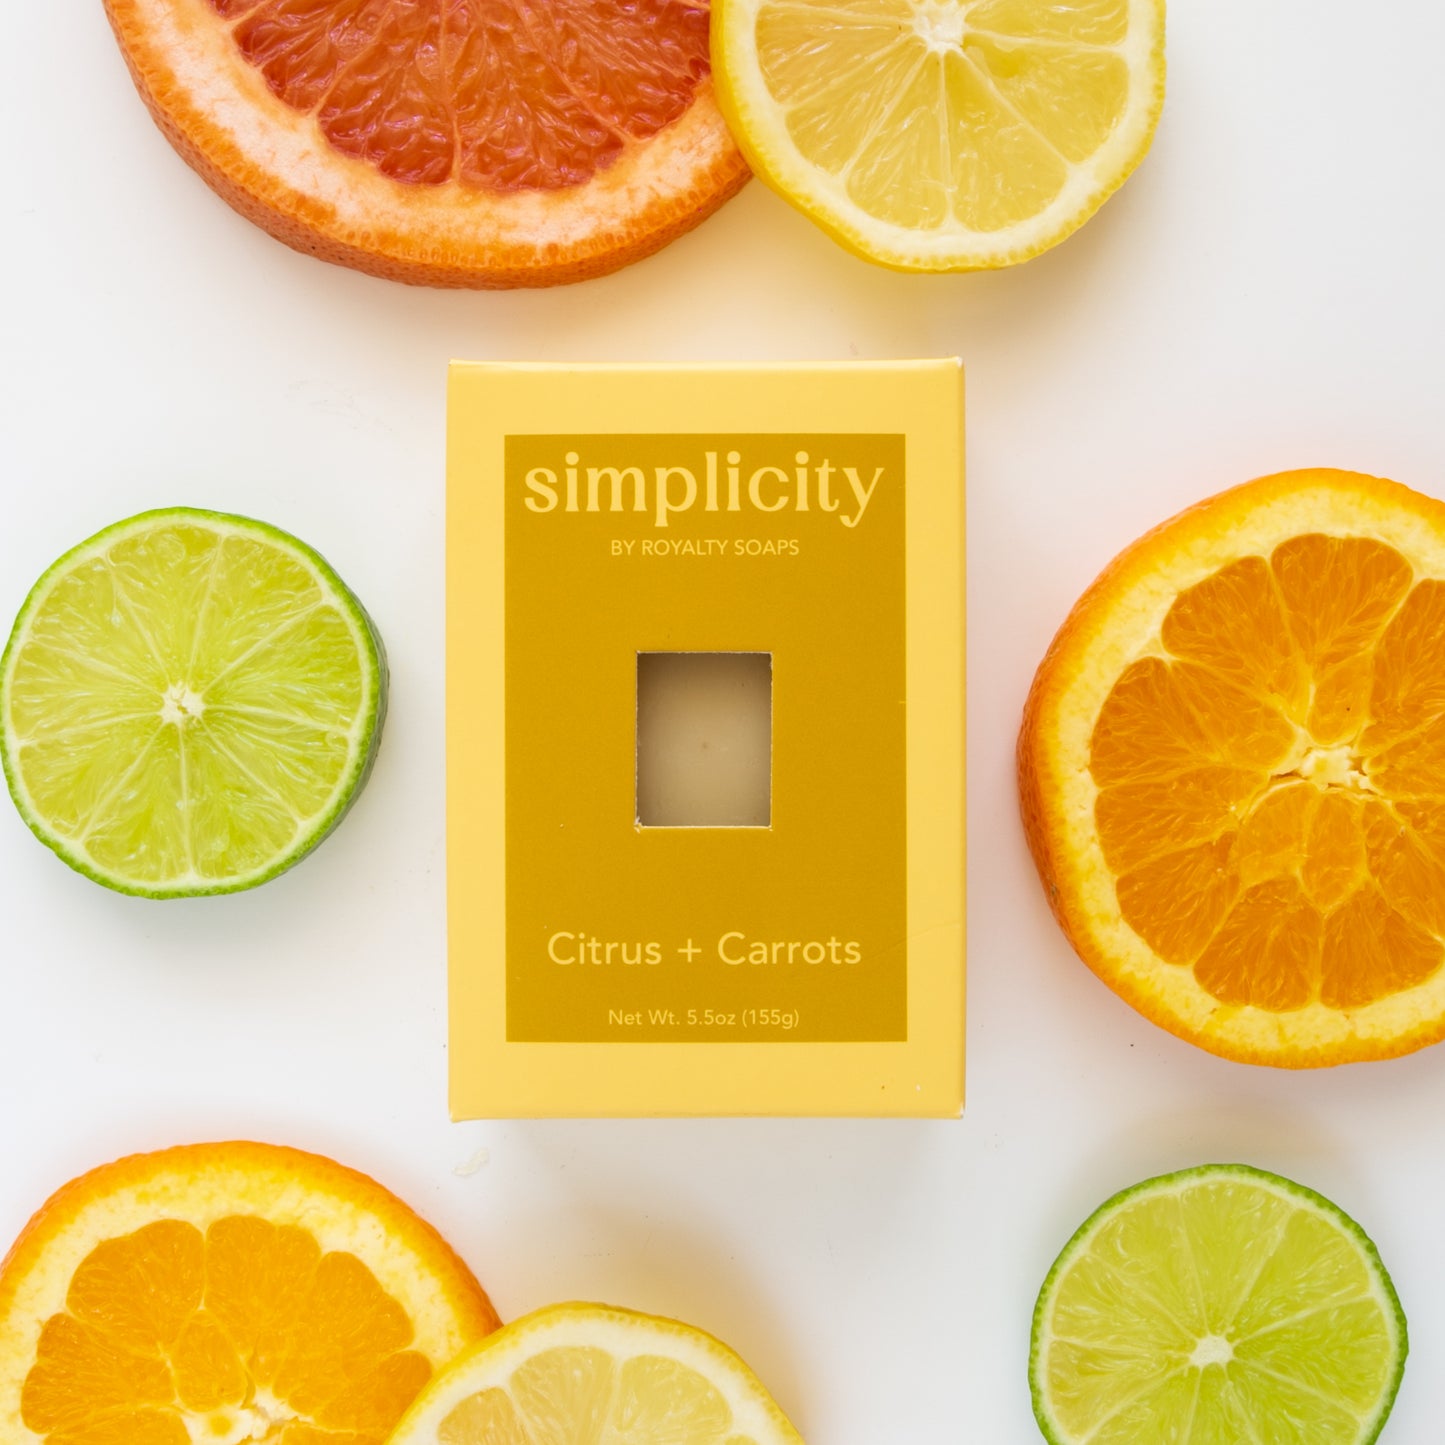 Citrus + Carrots Simplicity Soap Bar